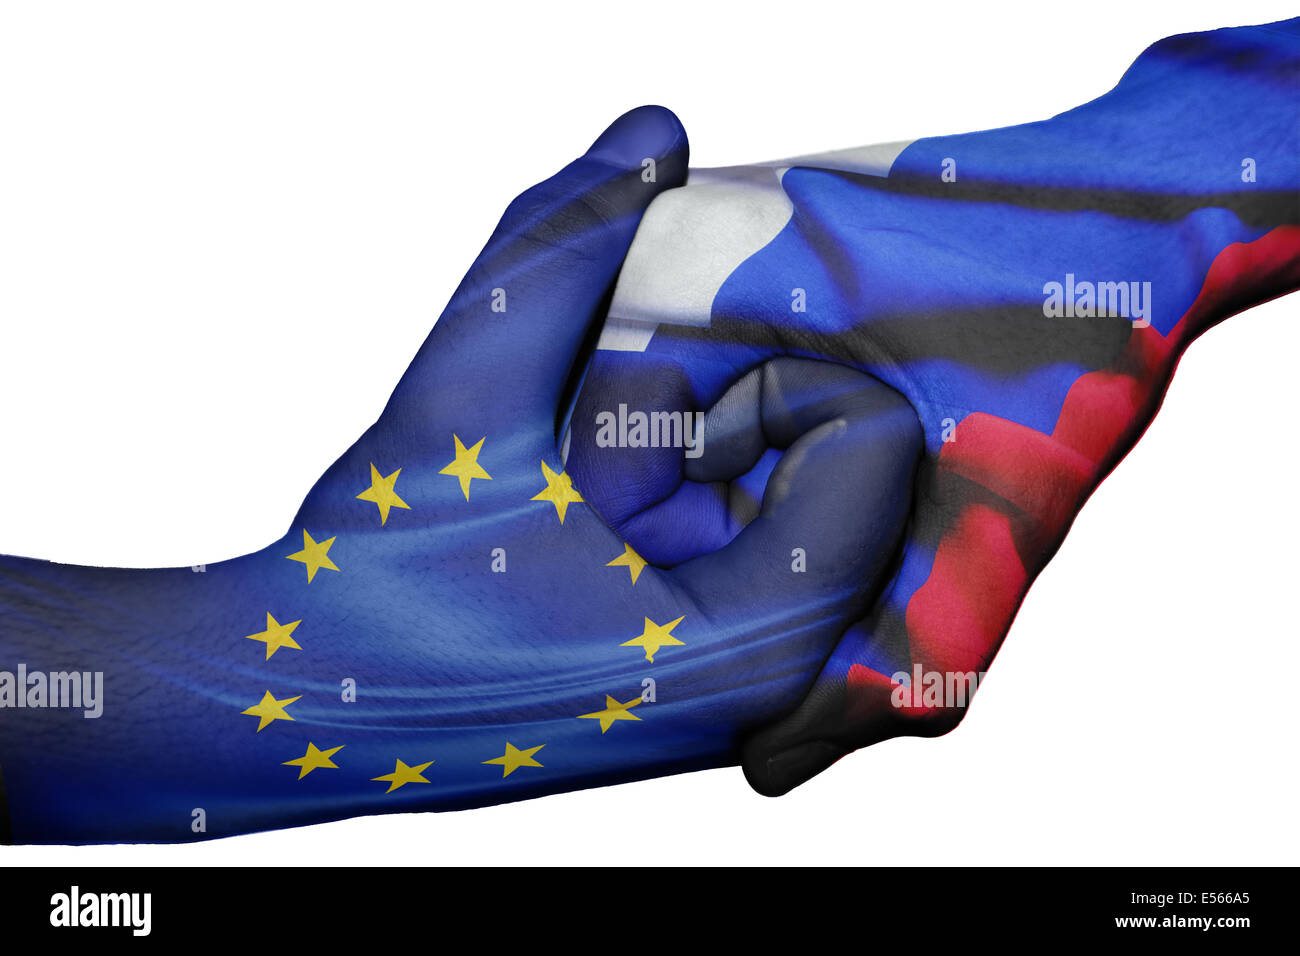 Handshake diplomatiche tra paesi: bandiere dell Unione europea e la Russia sovradipinta le due mani Foto Stock